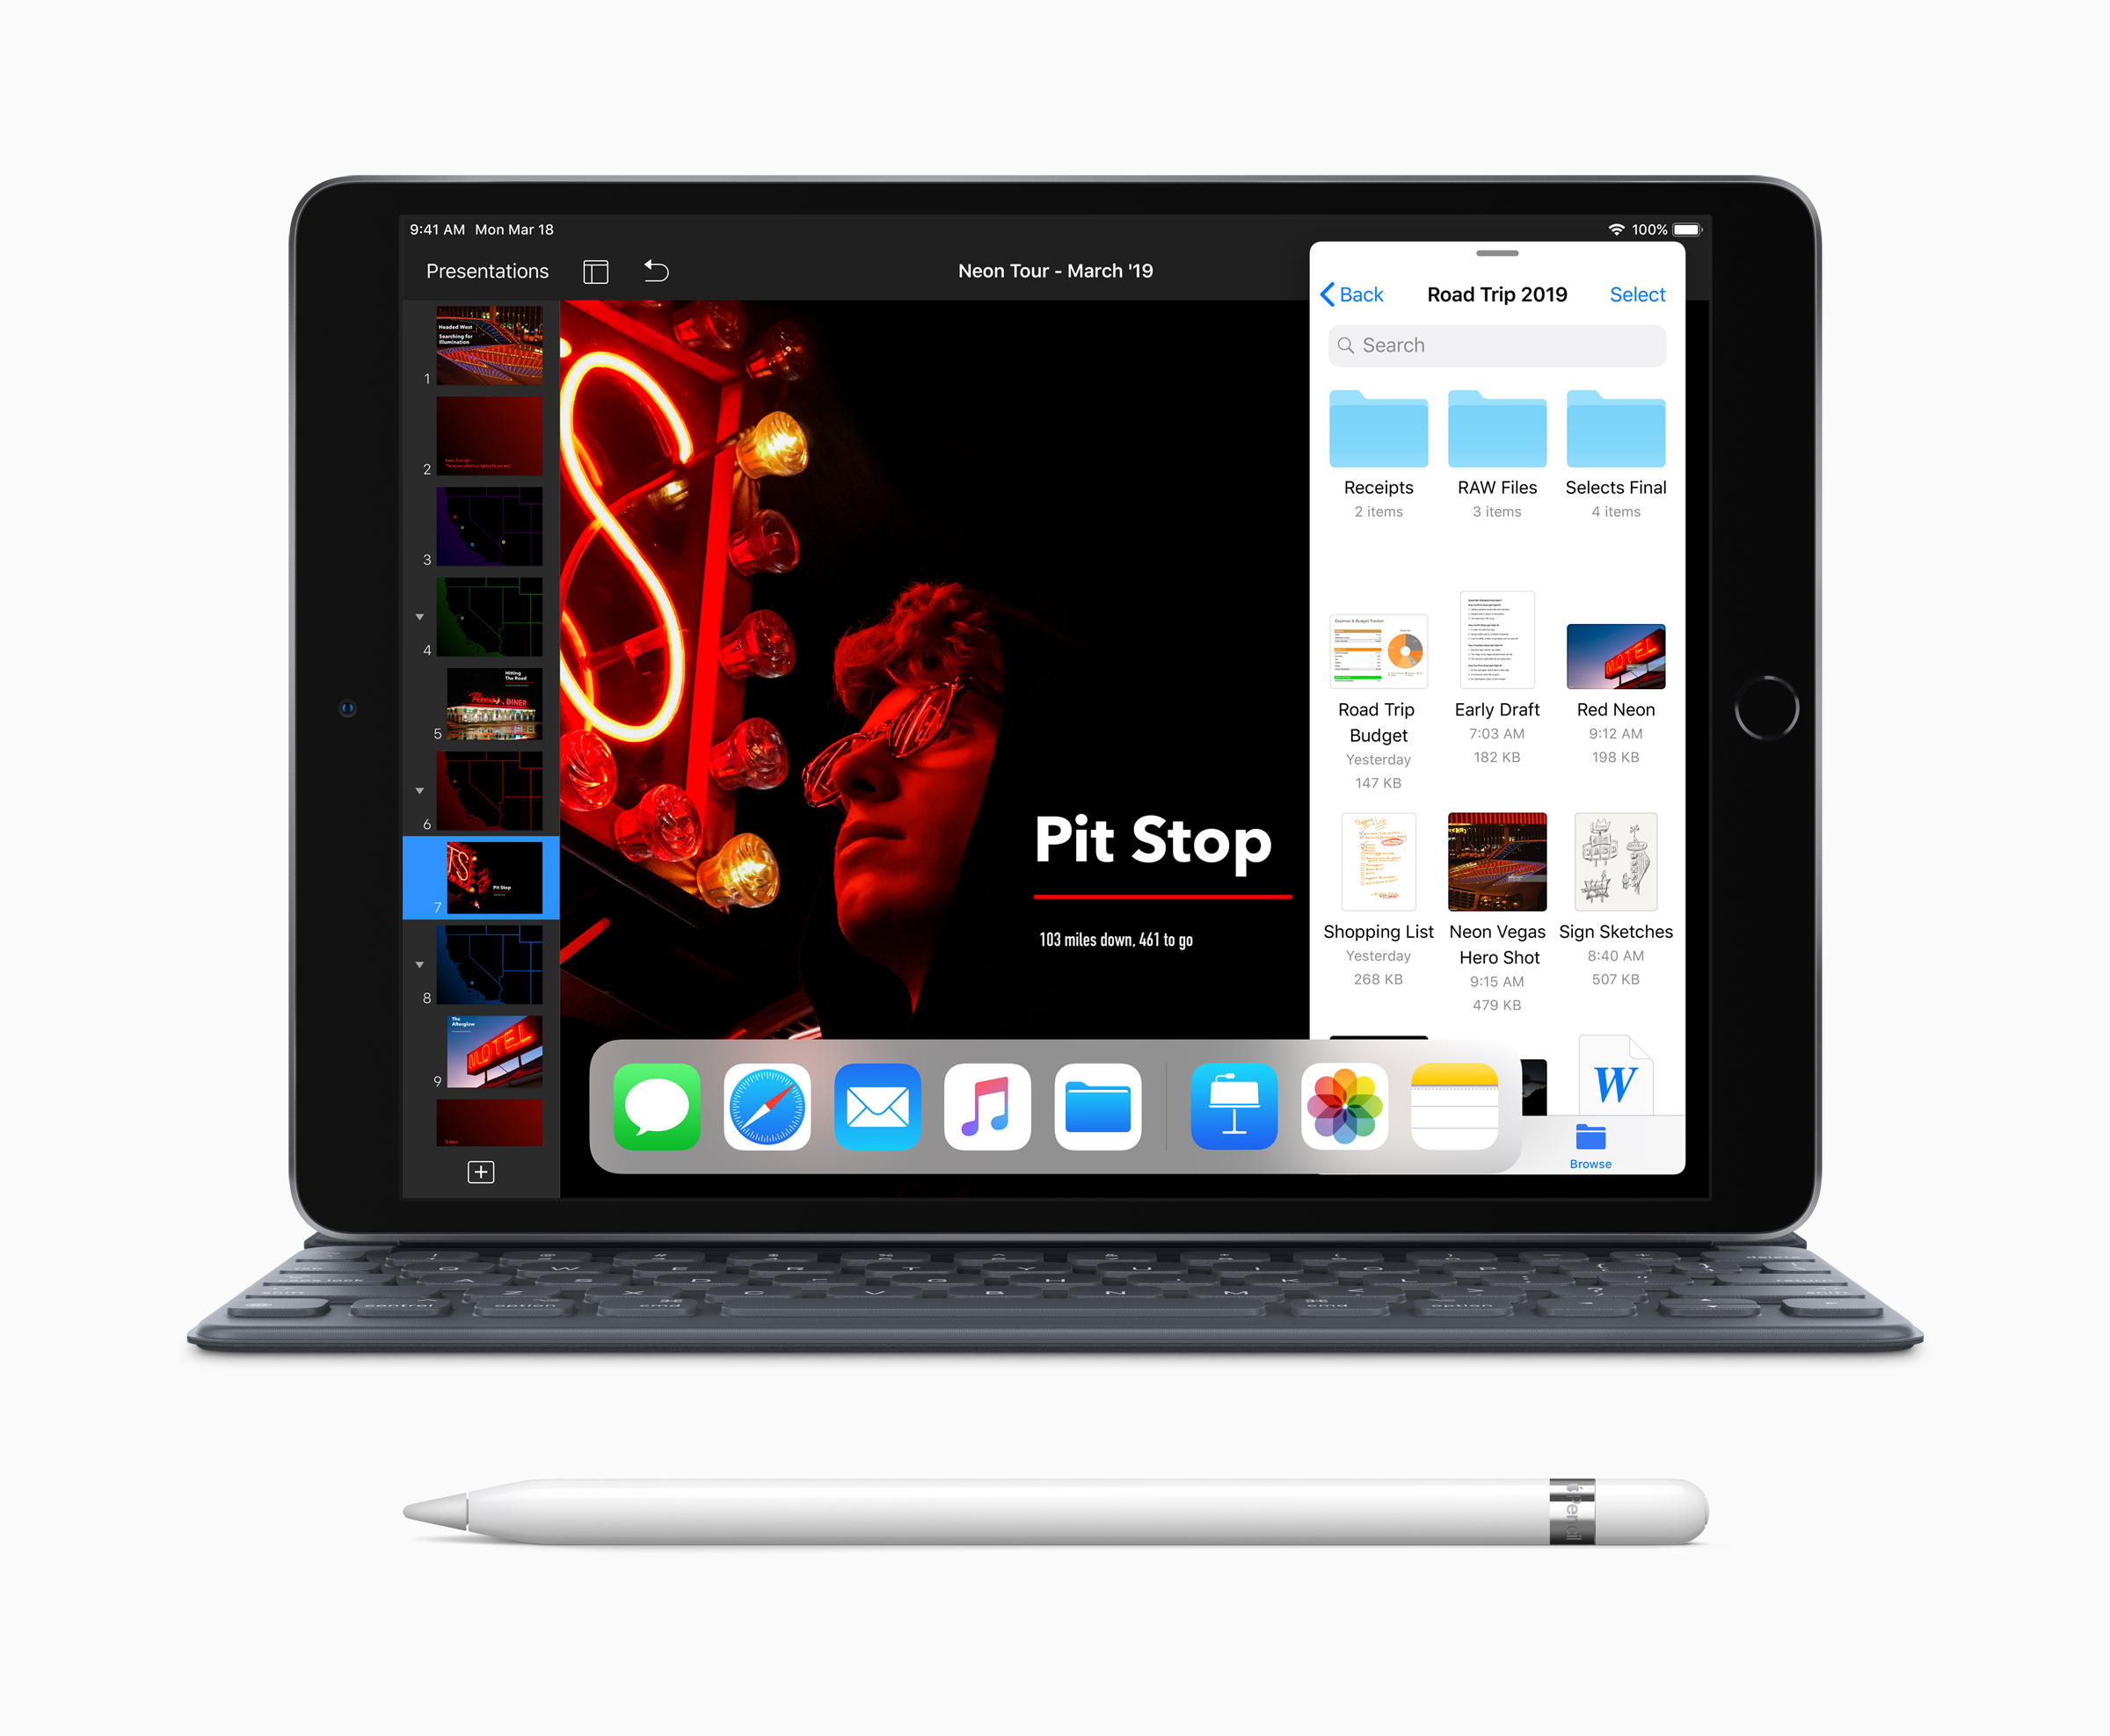 iPad Air 2019, màn hình 10.5-inch, hỗ trợ Apple Pencil và Smart Keyboard, chung cấu hình iPhone XS Max